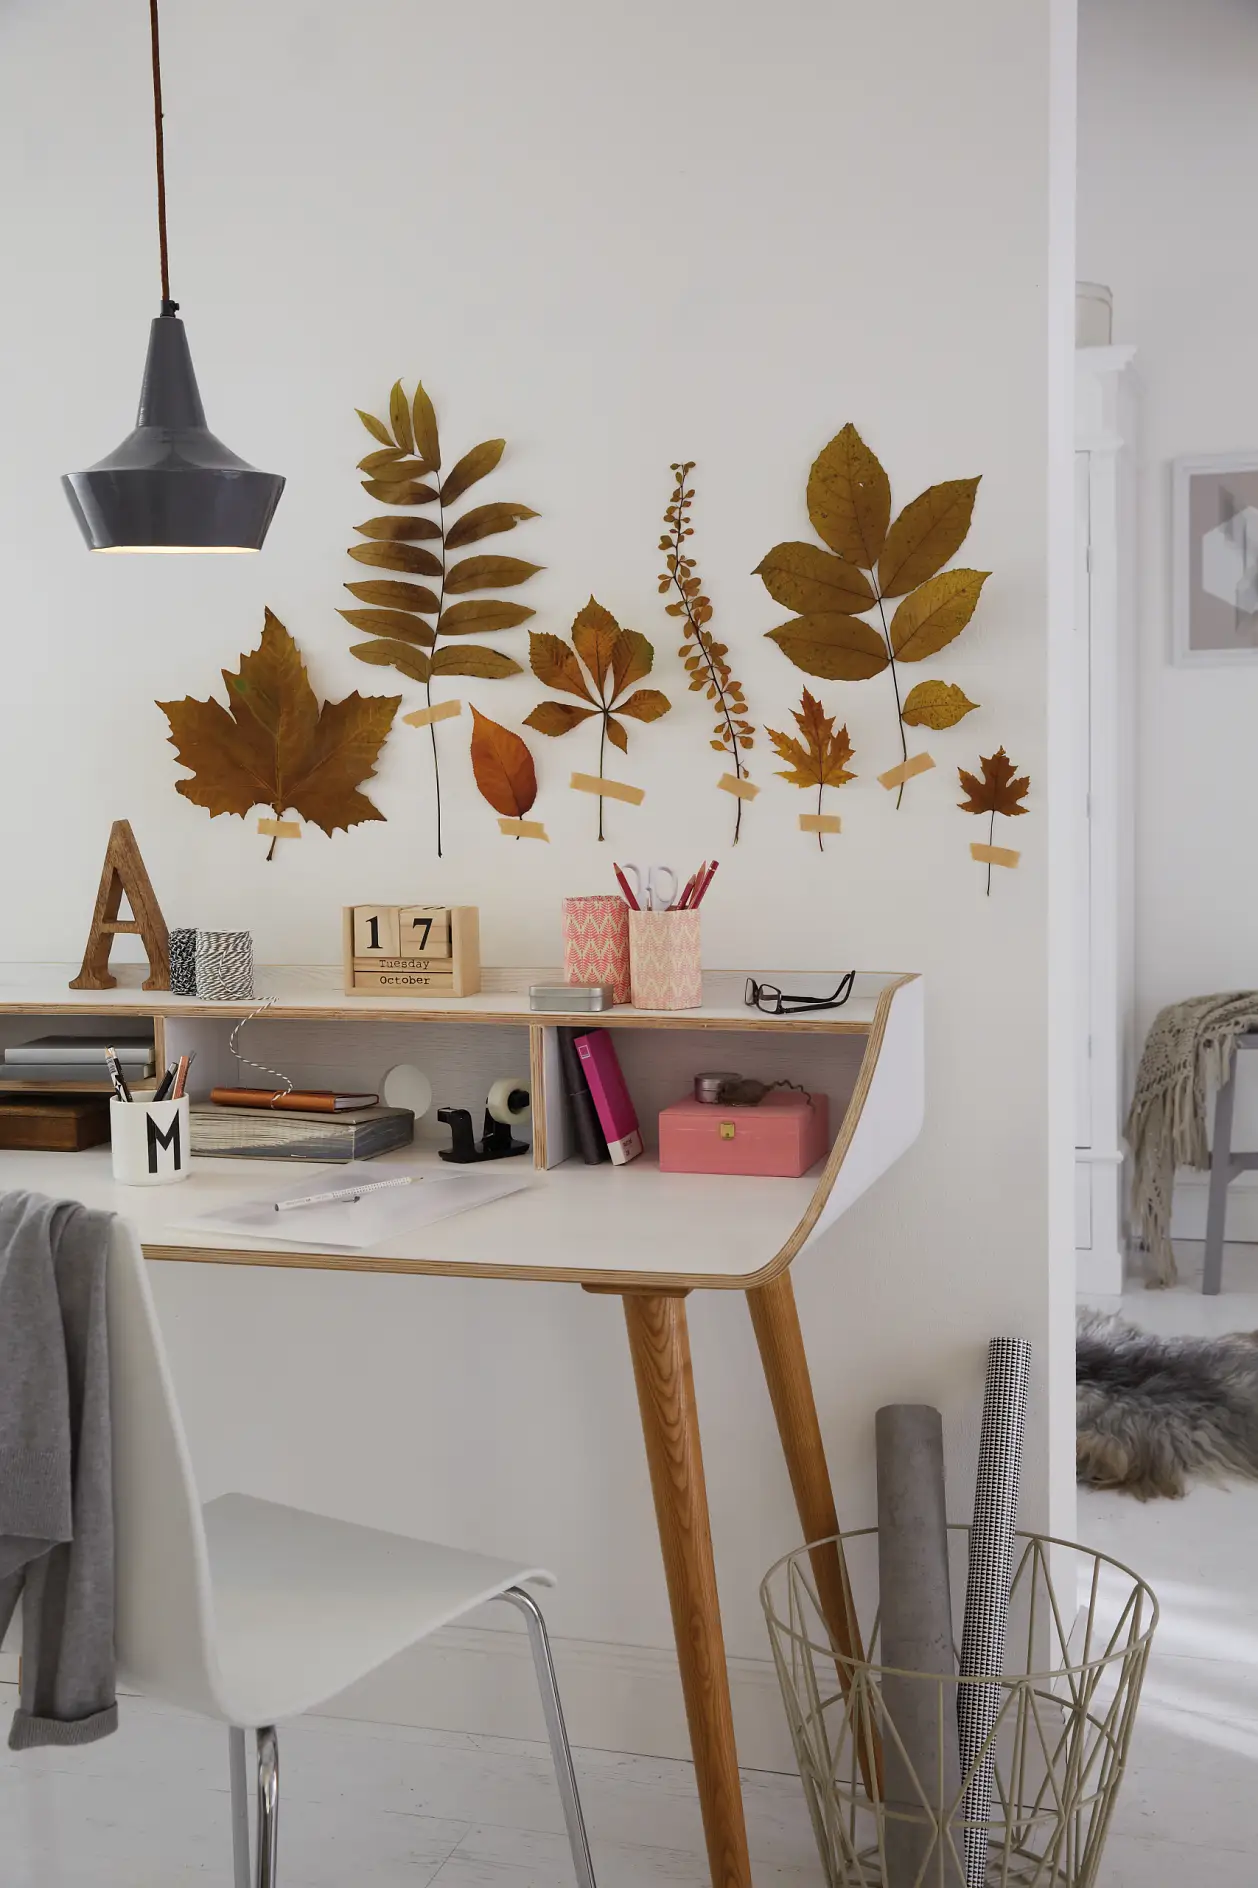 Schnell die besten Blätter raussuchen, zwischen dicken Büchern trocknen und dekorativ an die Wand kleben.